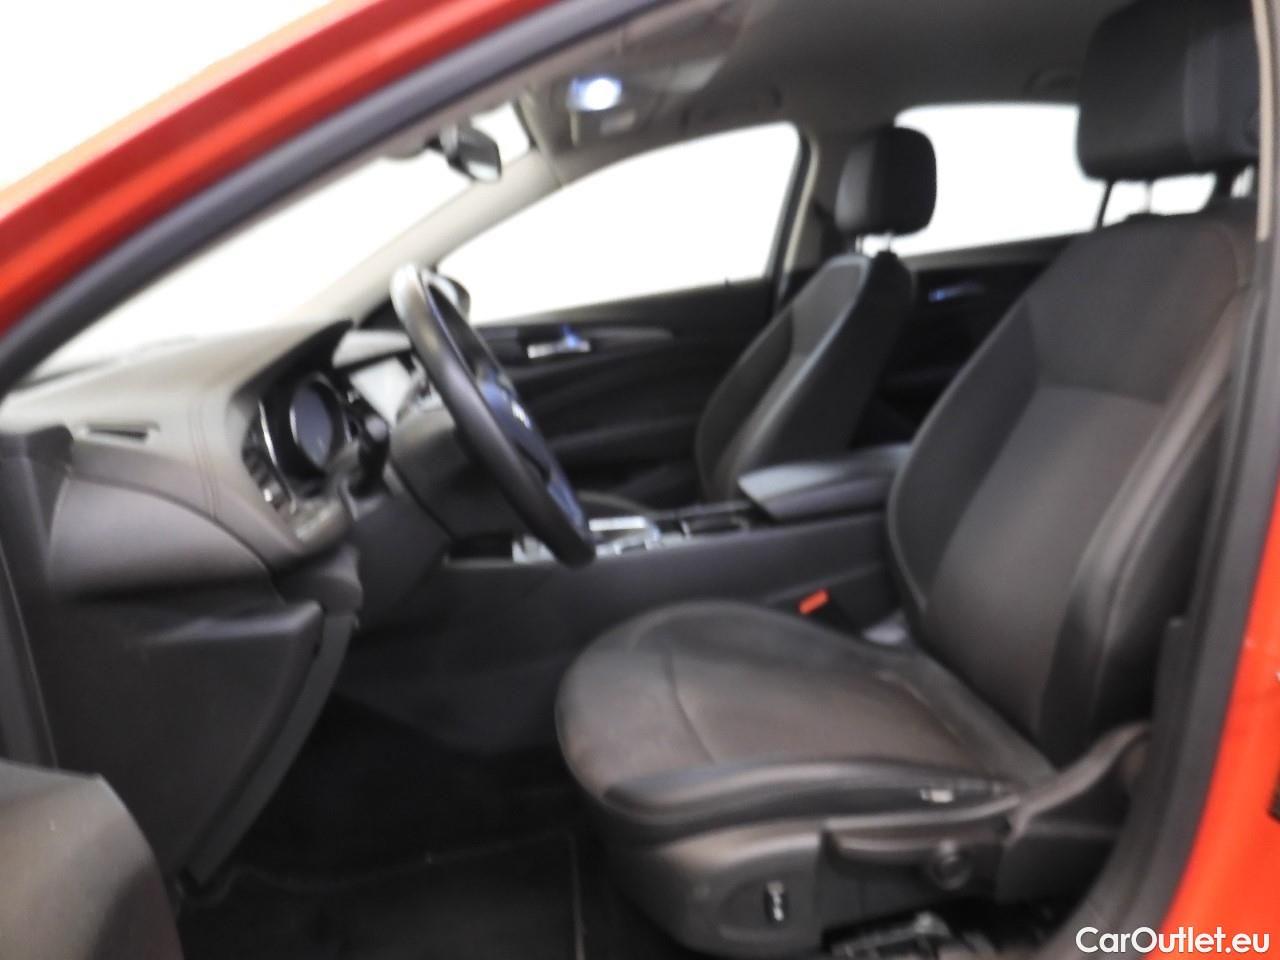  Opel  Insignia 1.6 CDTi 100kW S;S EcoTEC Business Exec 5d #5